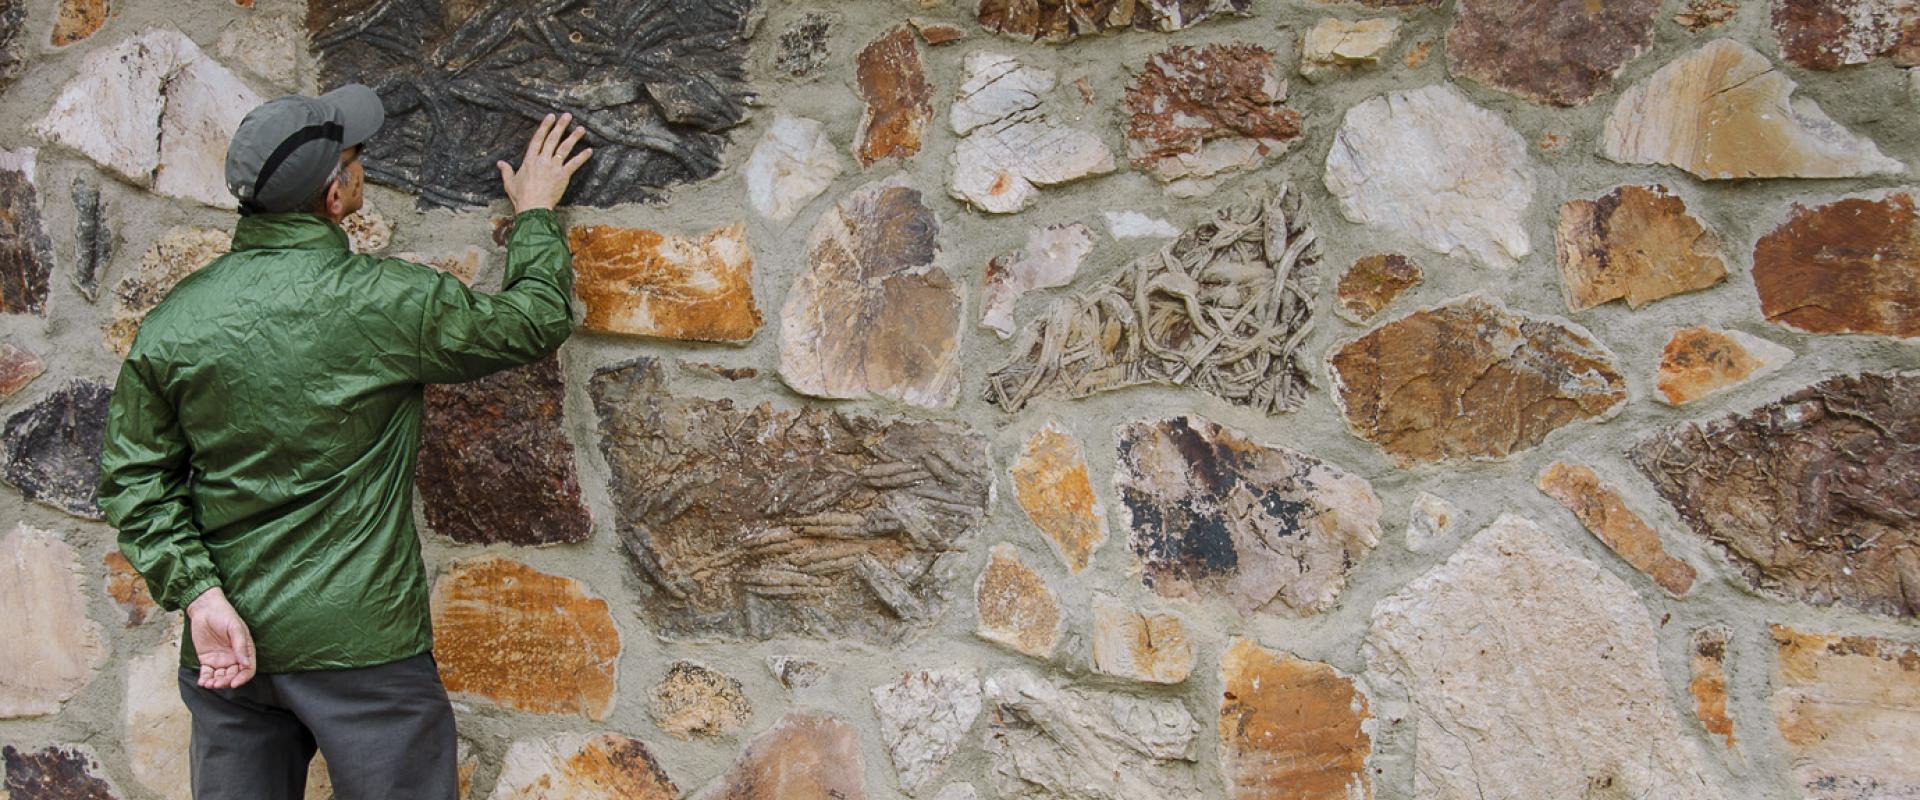 La ruta de las huellas fósiles: Un paseo por los mares antiguos de Monsagro.